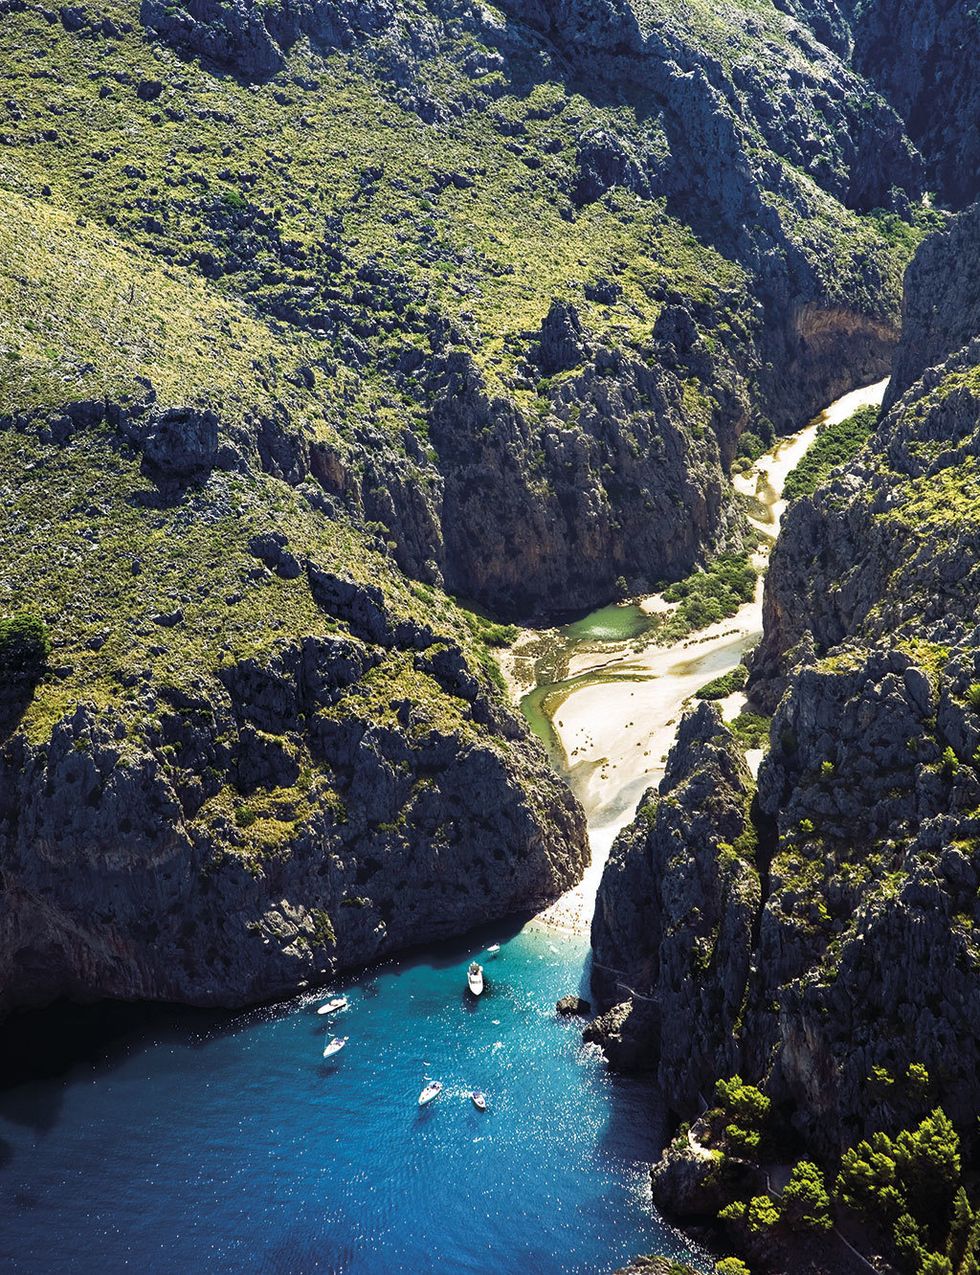 <p><strong>Torrent de Pareis (Mallorca). <a href="http://www.infomallorca.net" target="_blank">www.infomallorca.net</a>.</strong></p><p>Te proponemos abordar la isla mallorquina con un plan tan conocido por los amantes del aire libre como extraño para los que llegan aquí en busca exclusivamente de sol y playa. La ruta se llama Torrent de Pareis y es un cañón de 3 km que atraviesa la Sierra de la Tramuntana y discurre entre paredes verticales. Si ya echabas de menos una calita no te preocupes: el camino, declarado Monumento Natural, desemboca en Sa Calobra, una de las mejores playas de la isla y, tan escondida, que en el siglo XVI fue refugio de piratas en la zona.</p>